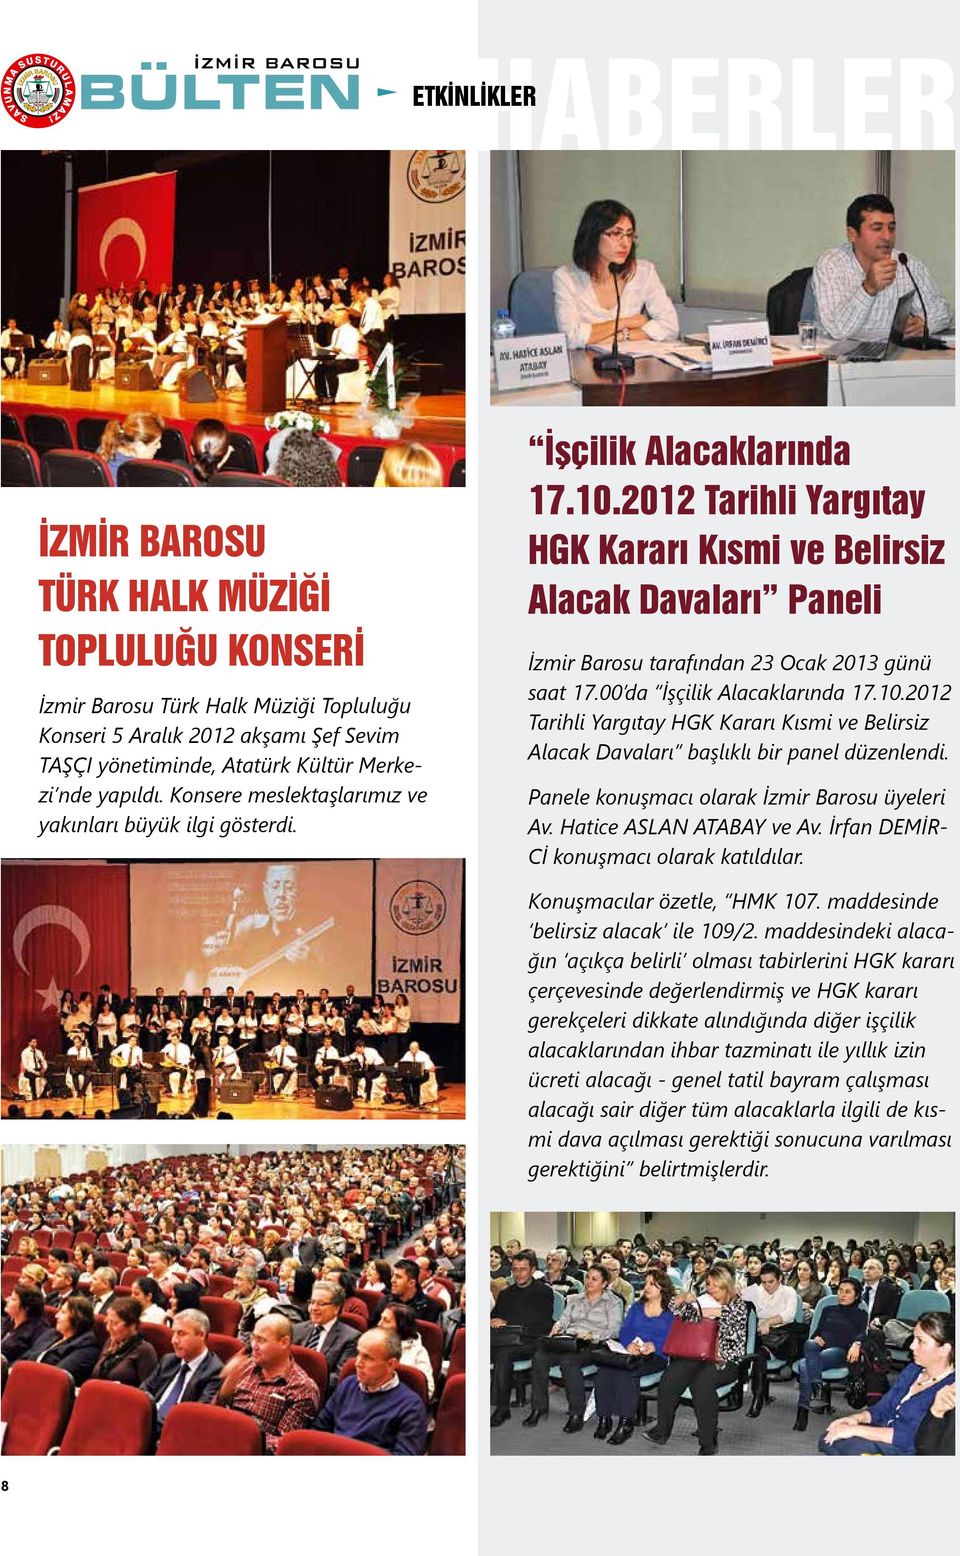 2012 Tarihli Yargıtay HGK Kararı Kısmi ve Belirsiz Alacak Davaları Paneli İzmir Barosu tarafından 23 Ocak 2013 günü saat 17.00 da İşçilik Alacaklarında 17.10.